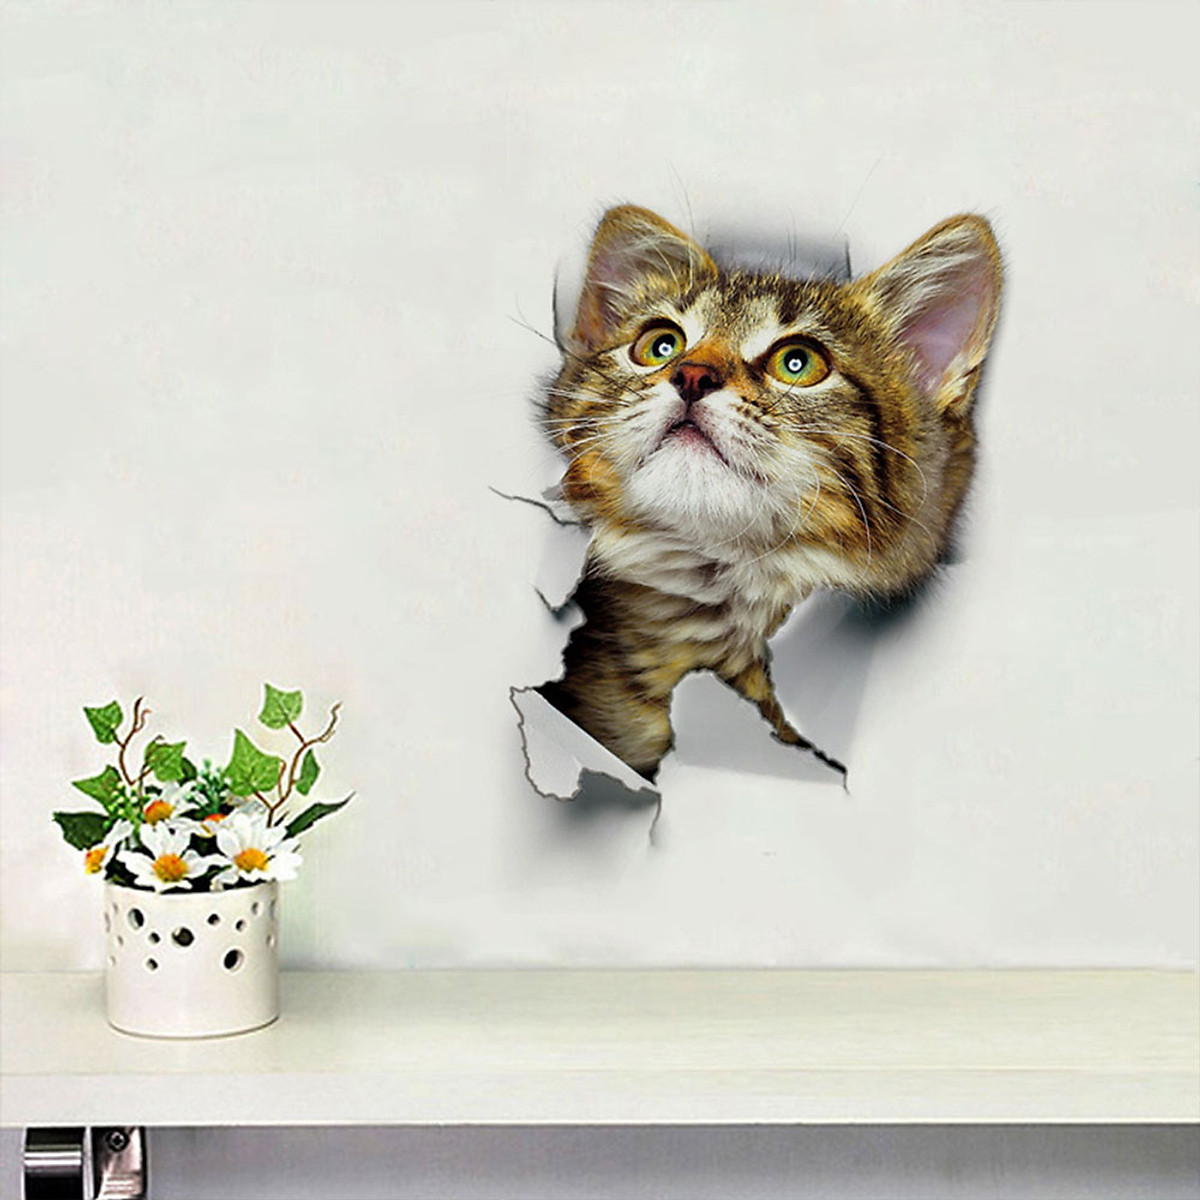 Giấy dán tường mèo 3D: Bạn đang muốn thay đổi không gian sống của mình? Hãy thử ngay giấy dán tường mèo 3D siêu đẹp, siêu hiệu quả. Với hình ảnh mèo 3D sống động, sản phẩm sẽ trang trí cho căn phòng của bạn thêm phần đẹp mắt và ấn tượng.